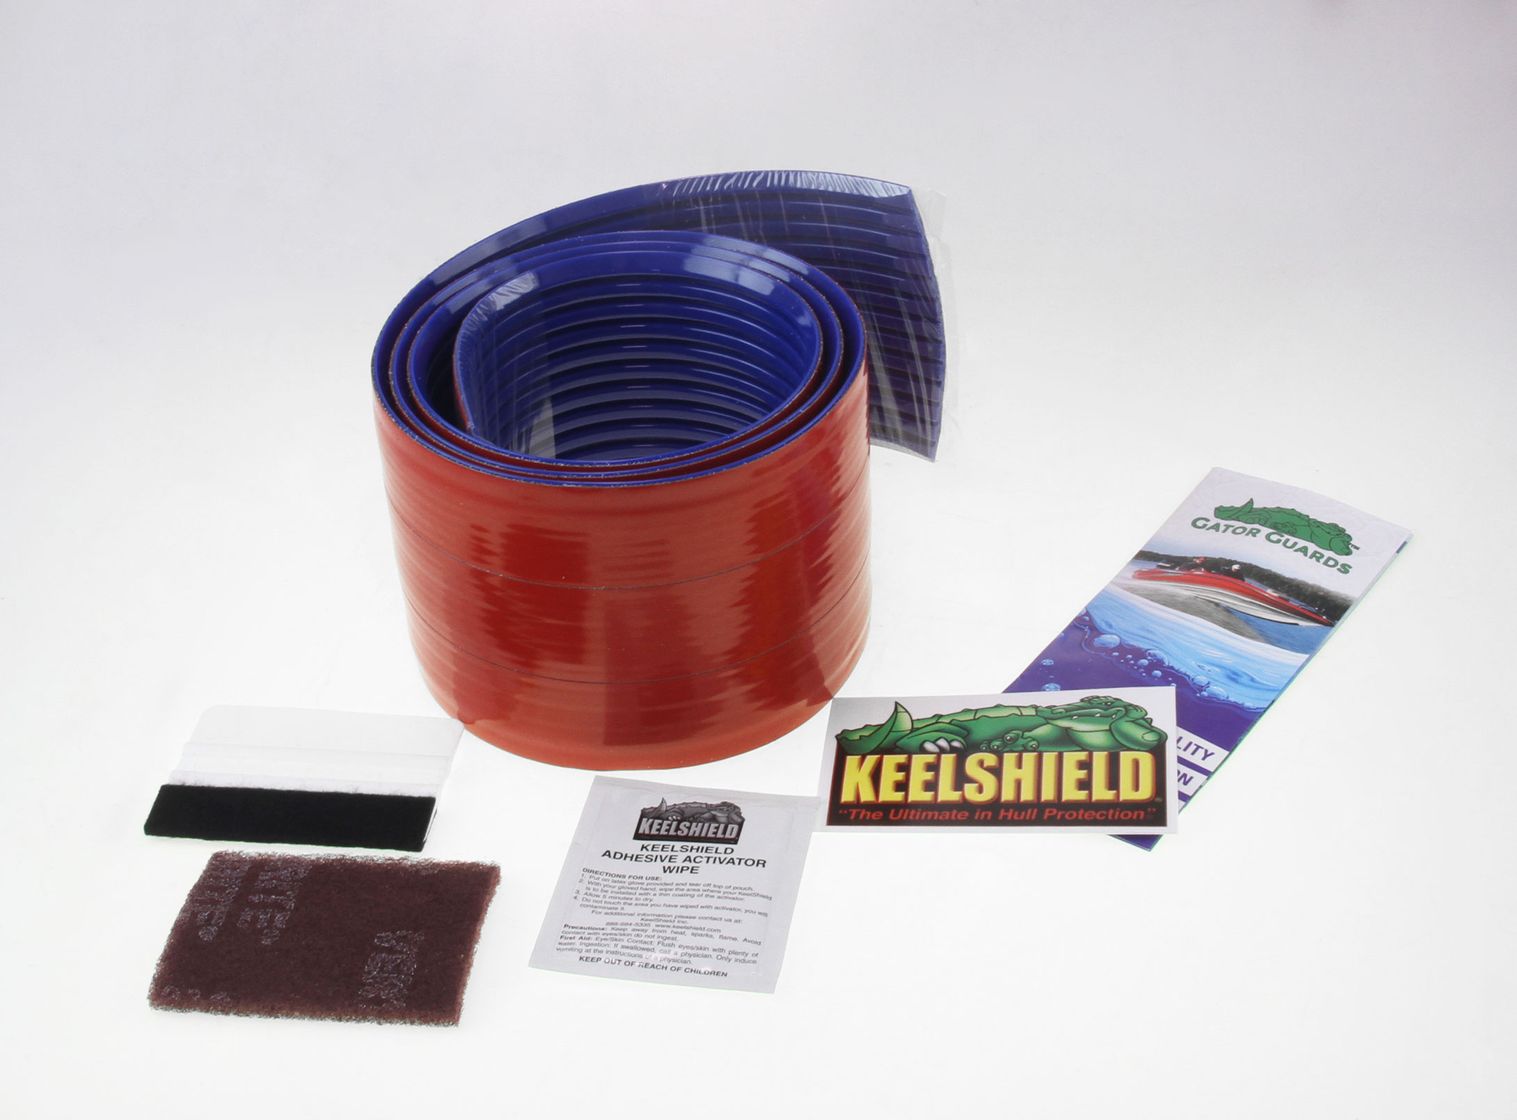 Защита киля KeelShield, 1.83 м, синий цвет KS6ROY - фото 2